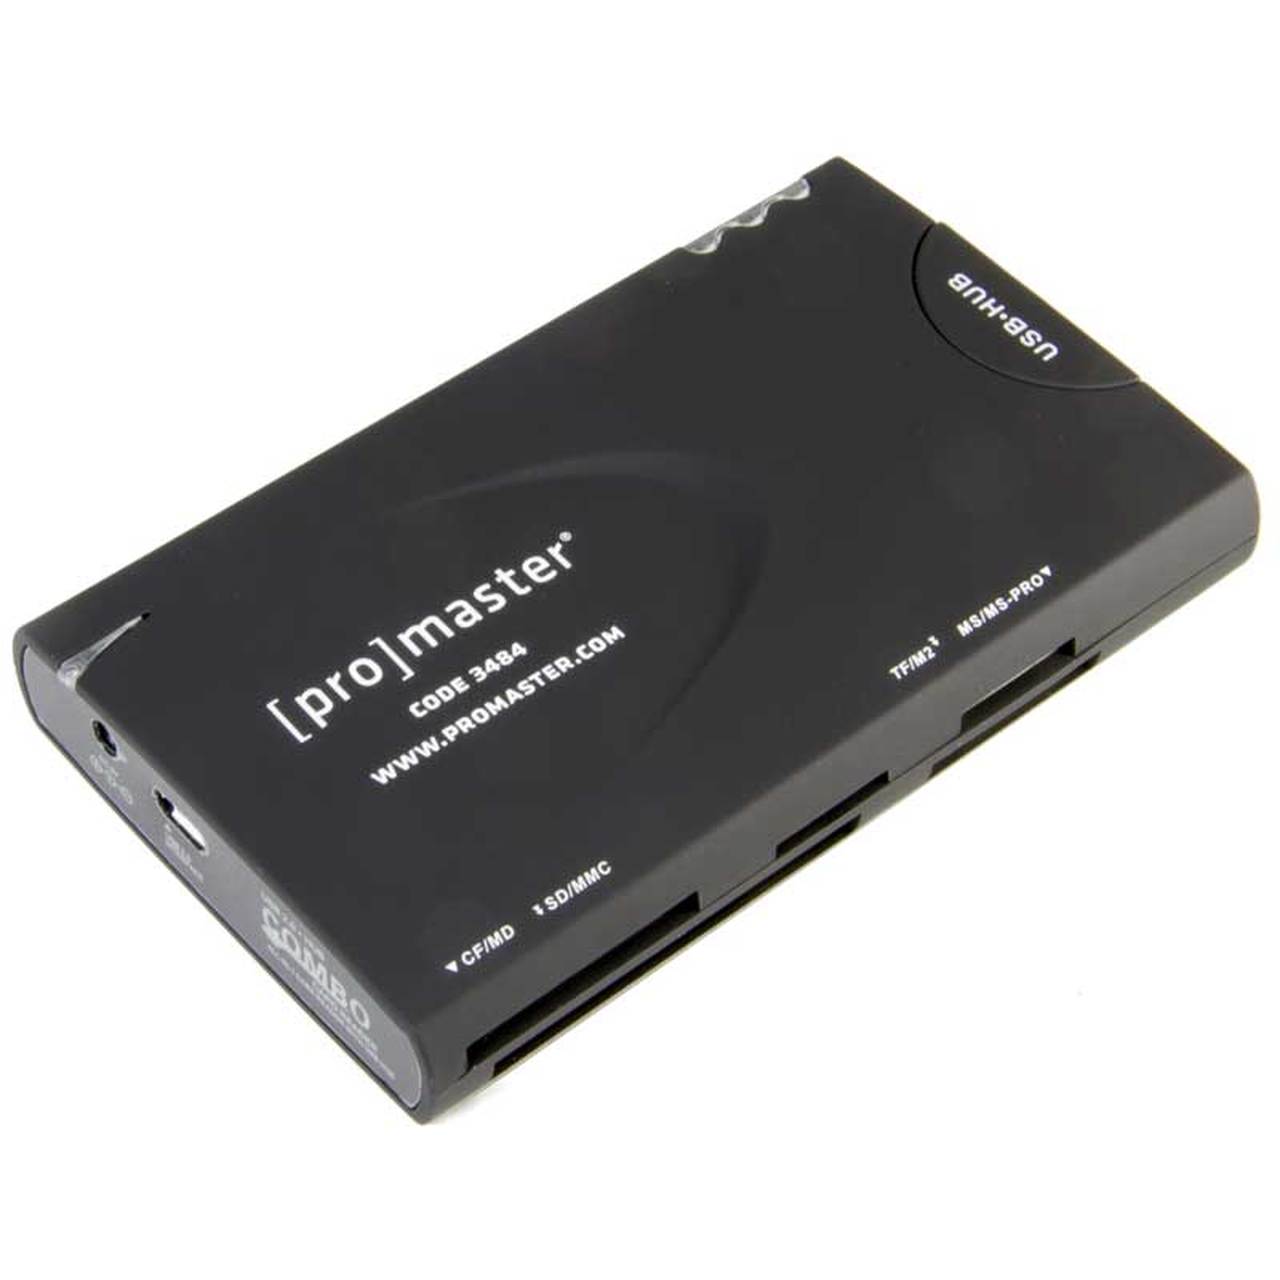 Promaster 3484 Multi Card Reader USB2